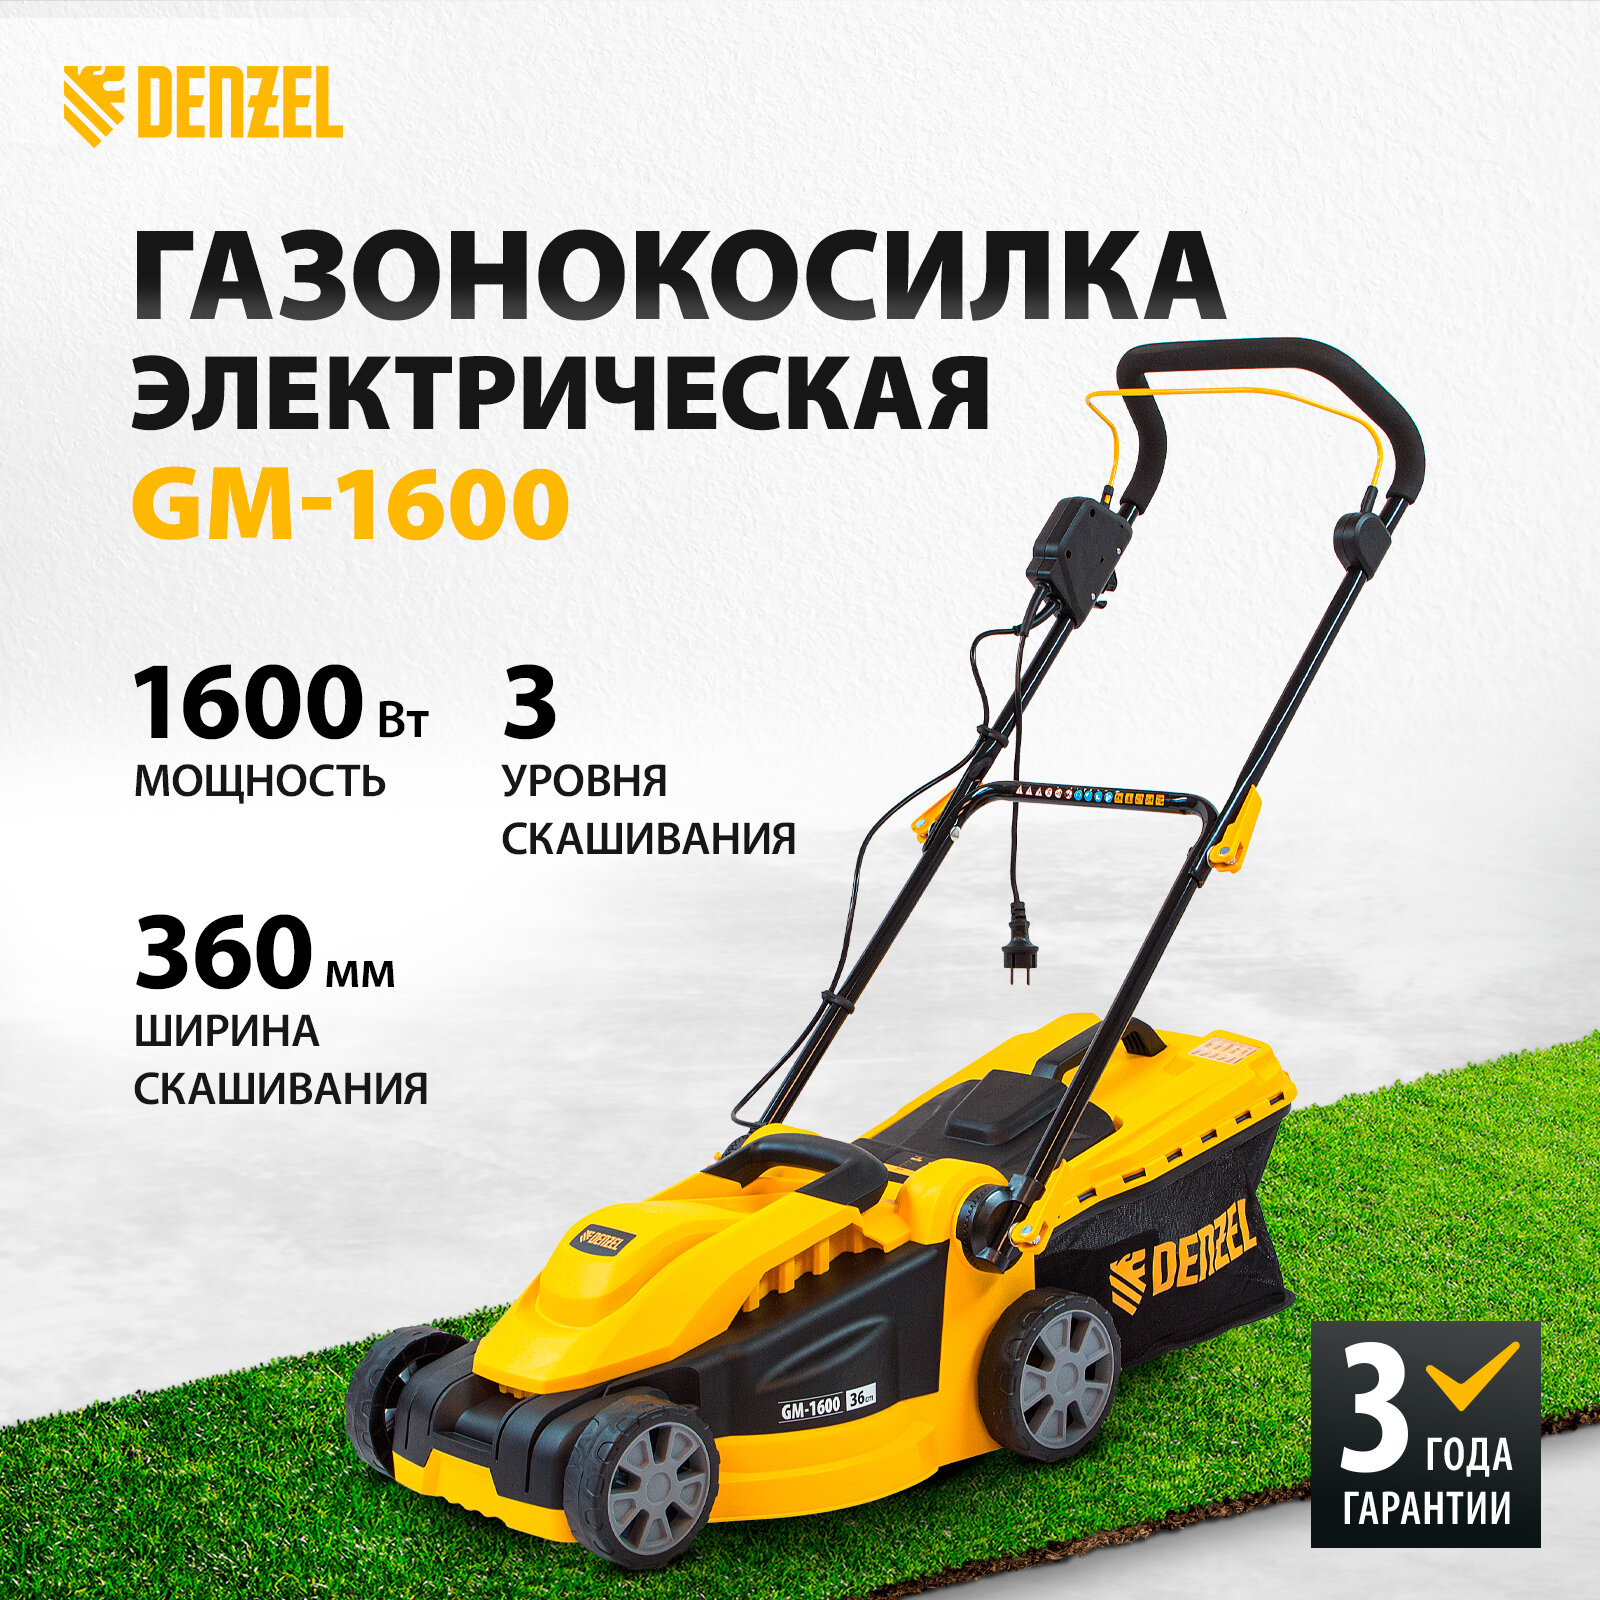 Электрическая газонокосилка Denzel 96616 GM-1600 1600 Вт 36